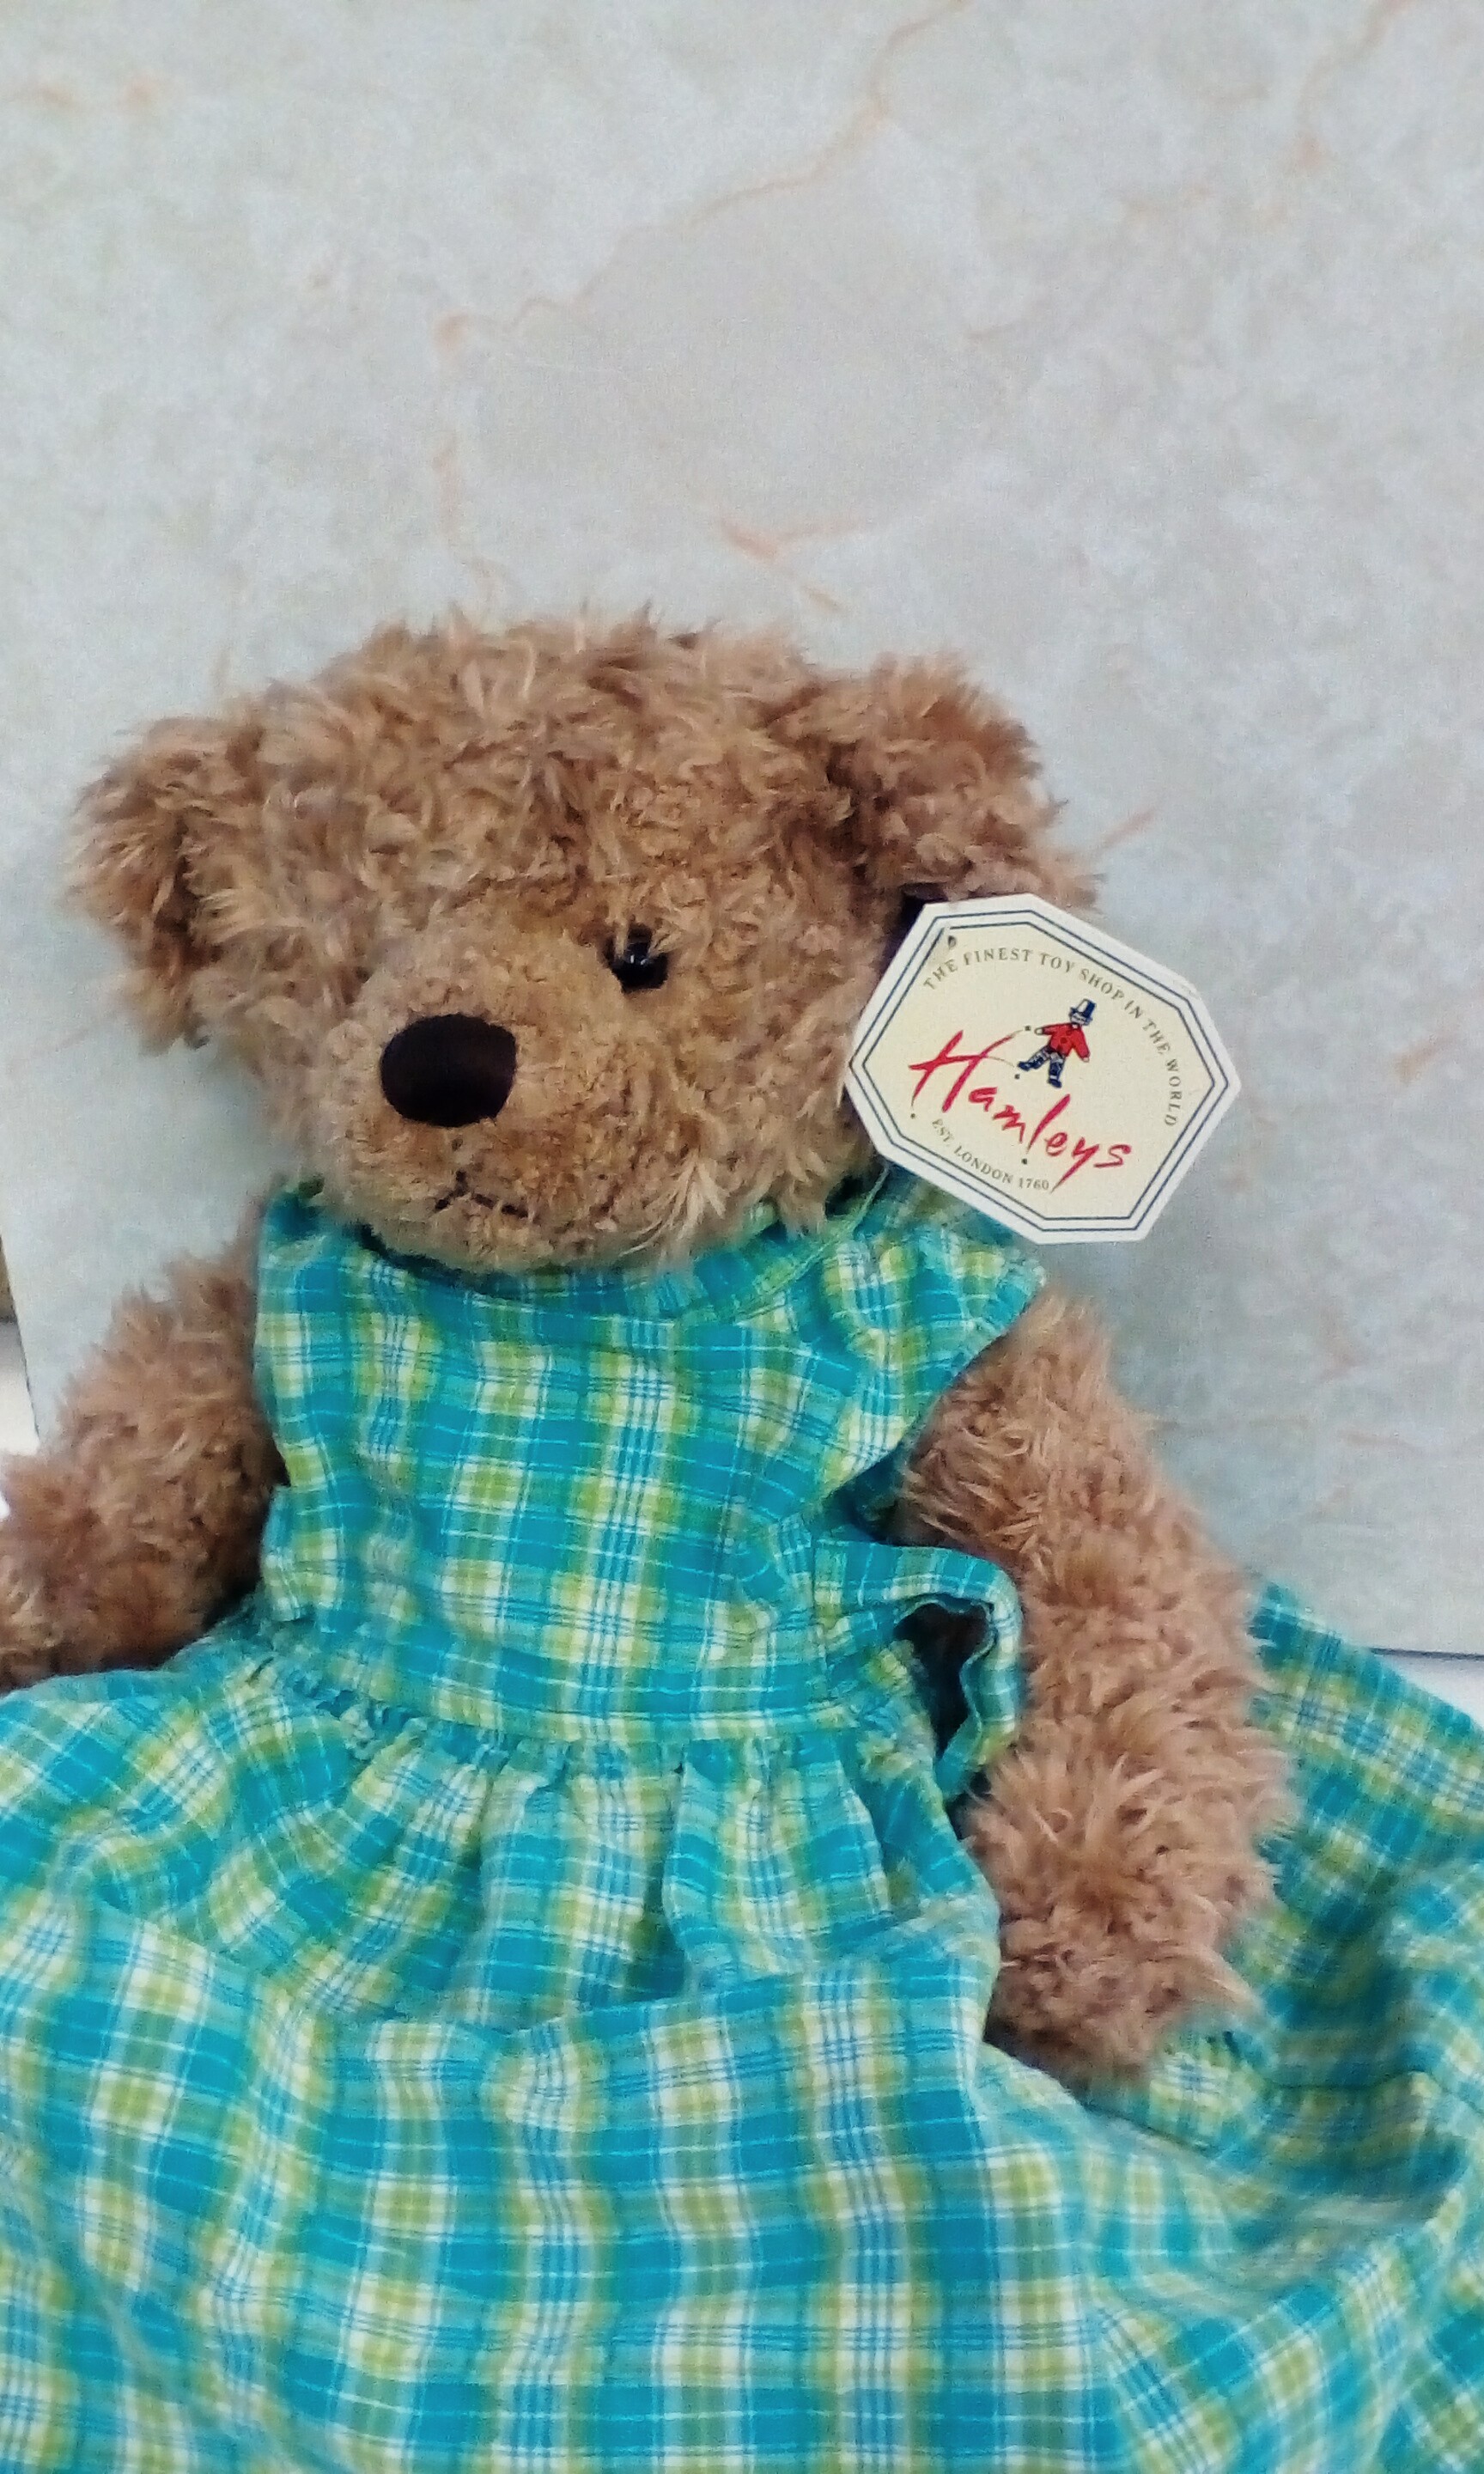 Hanley's teddy bear